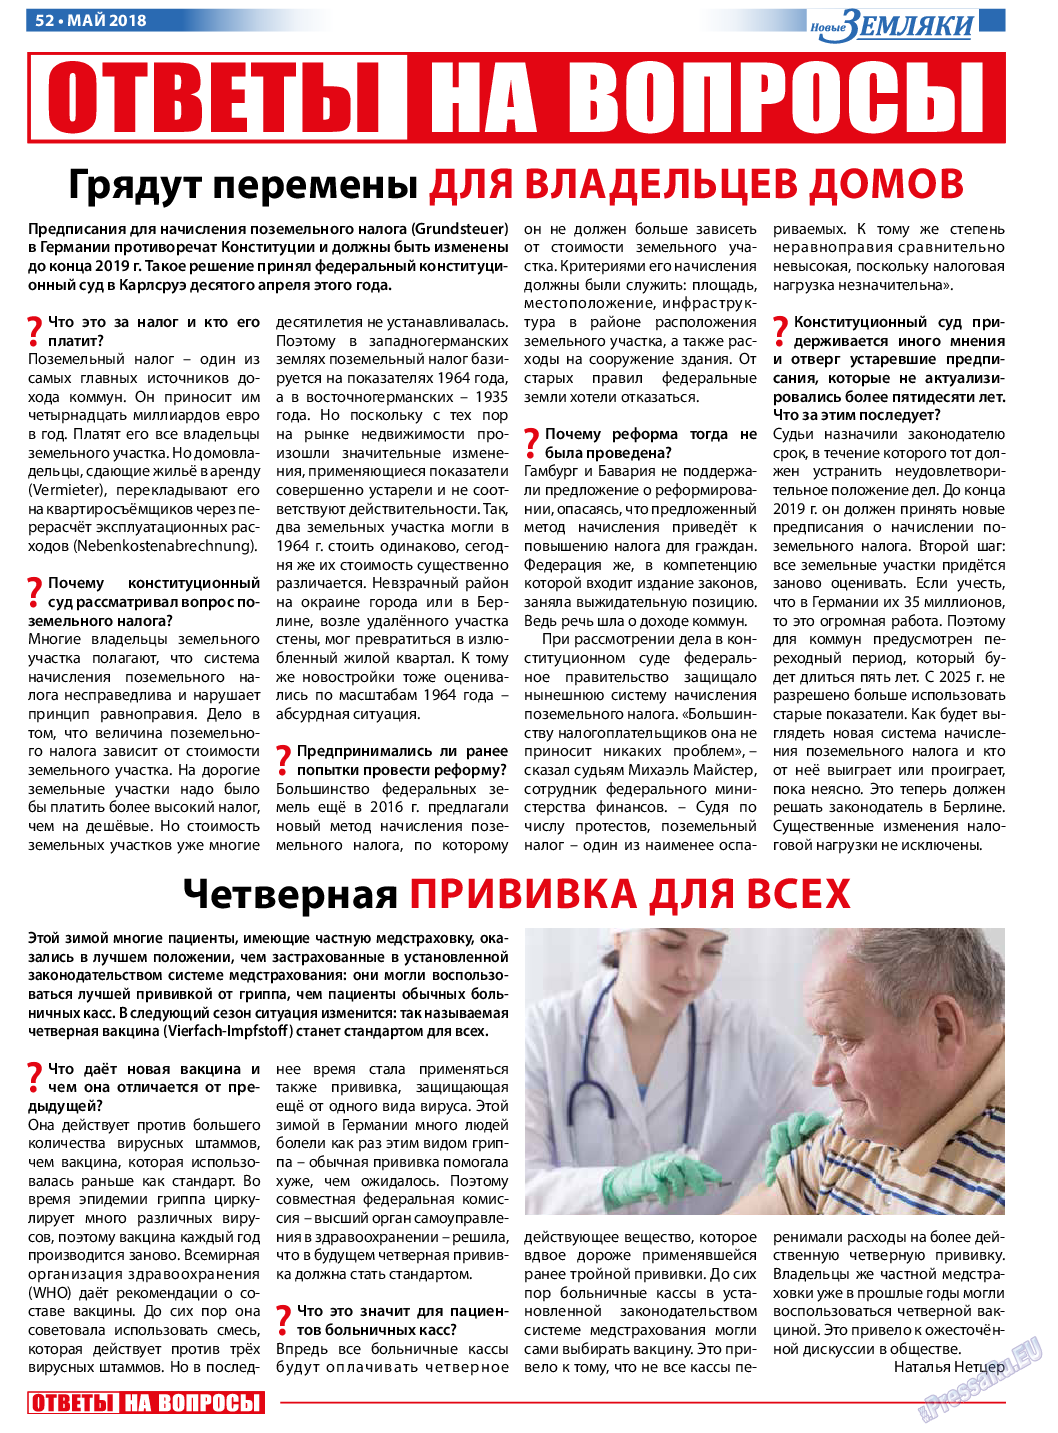 Новые Земляки, газета. 2018 №5 стр.52